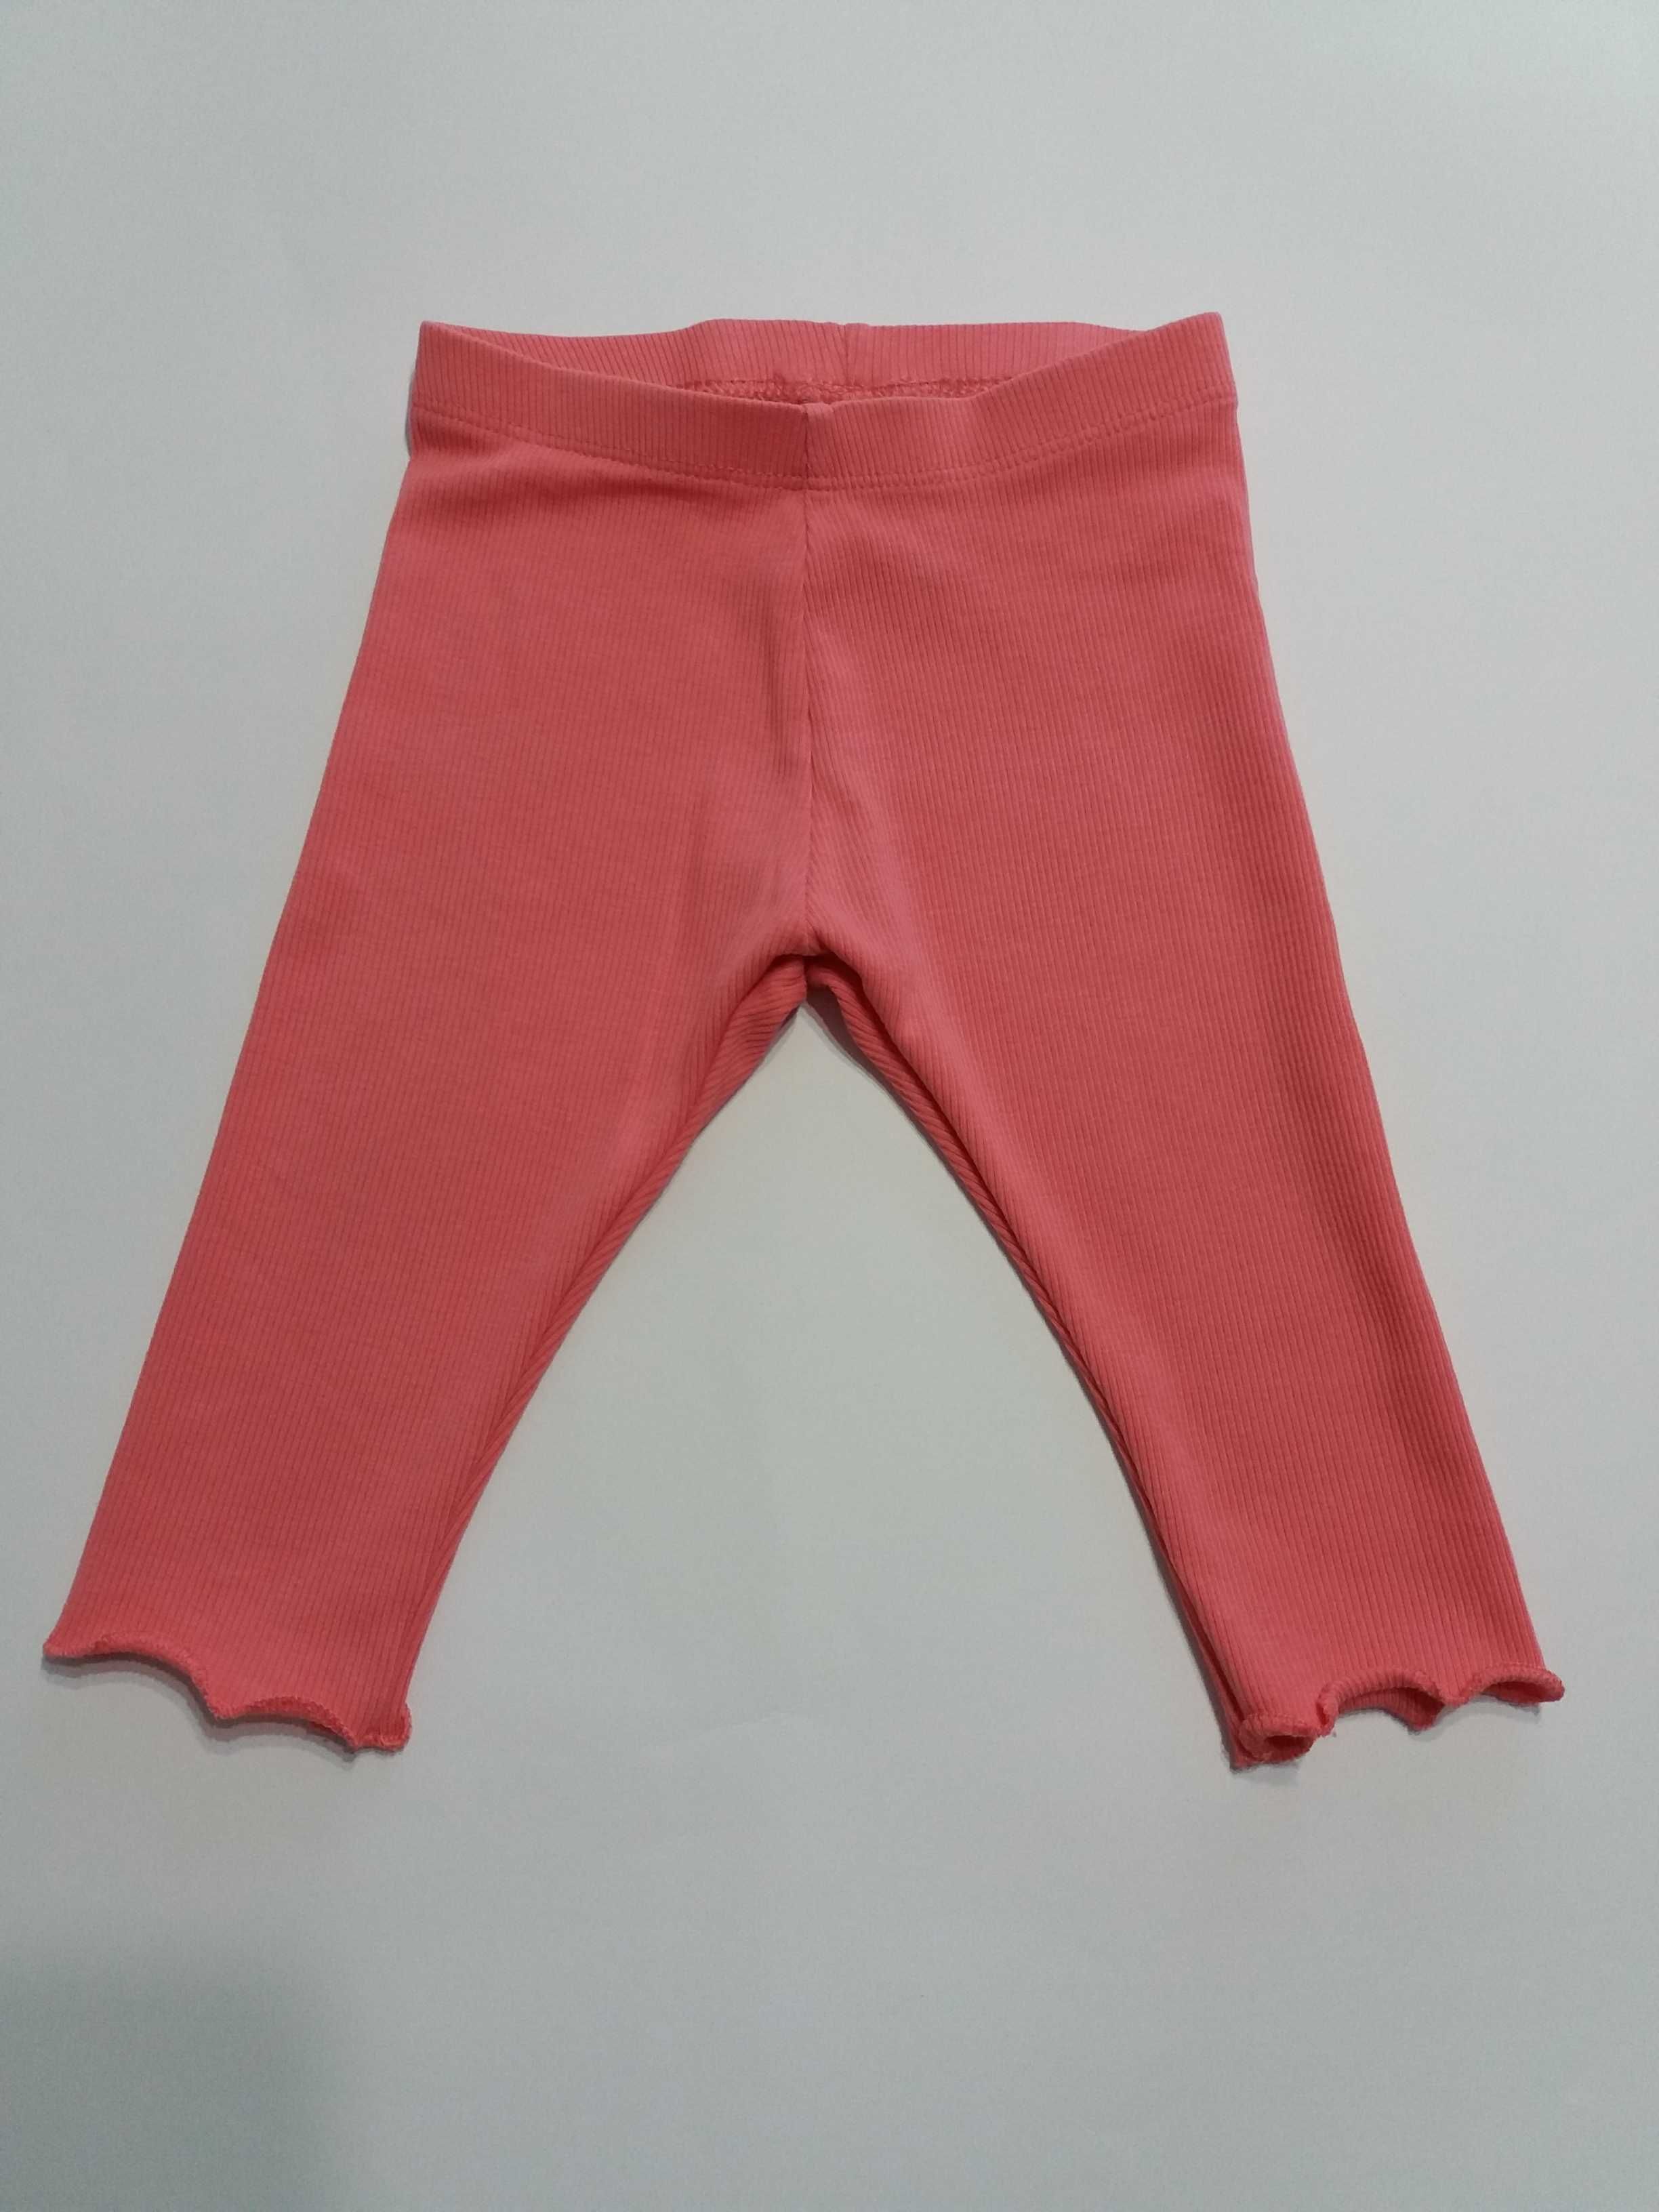 Spodnie długie dla dziewczynki różowe z falbanką na dole H&M r. 74